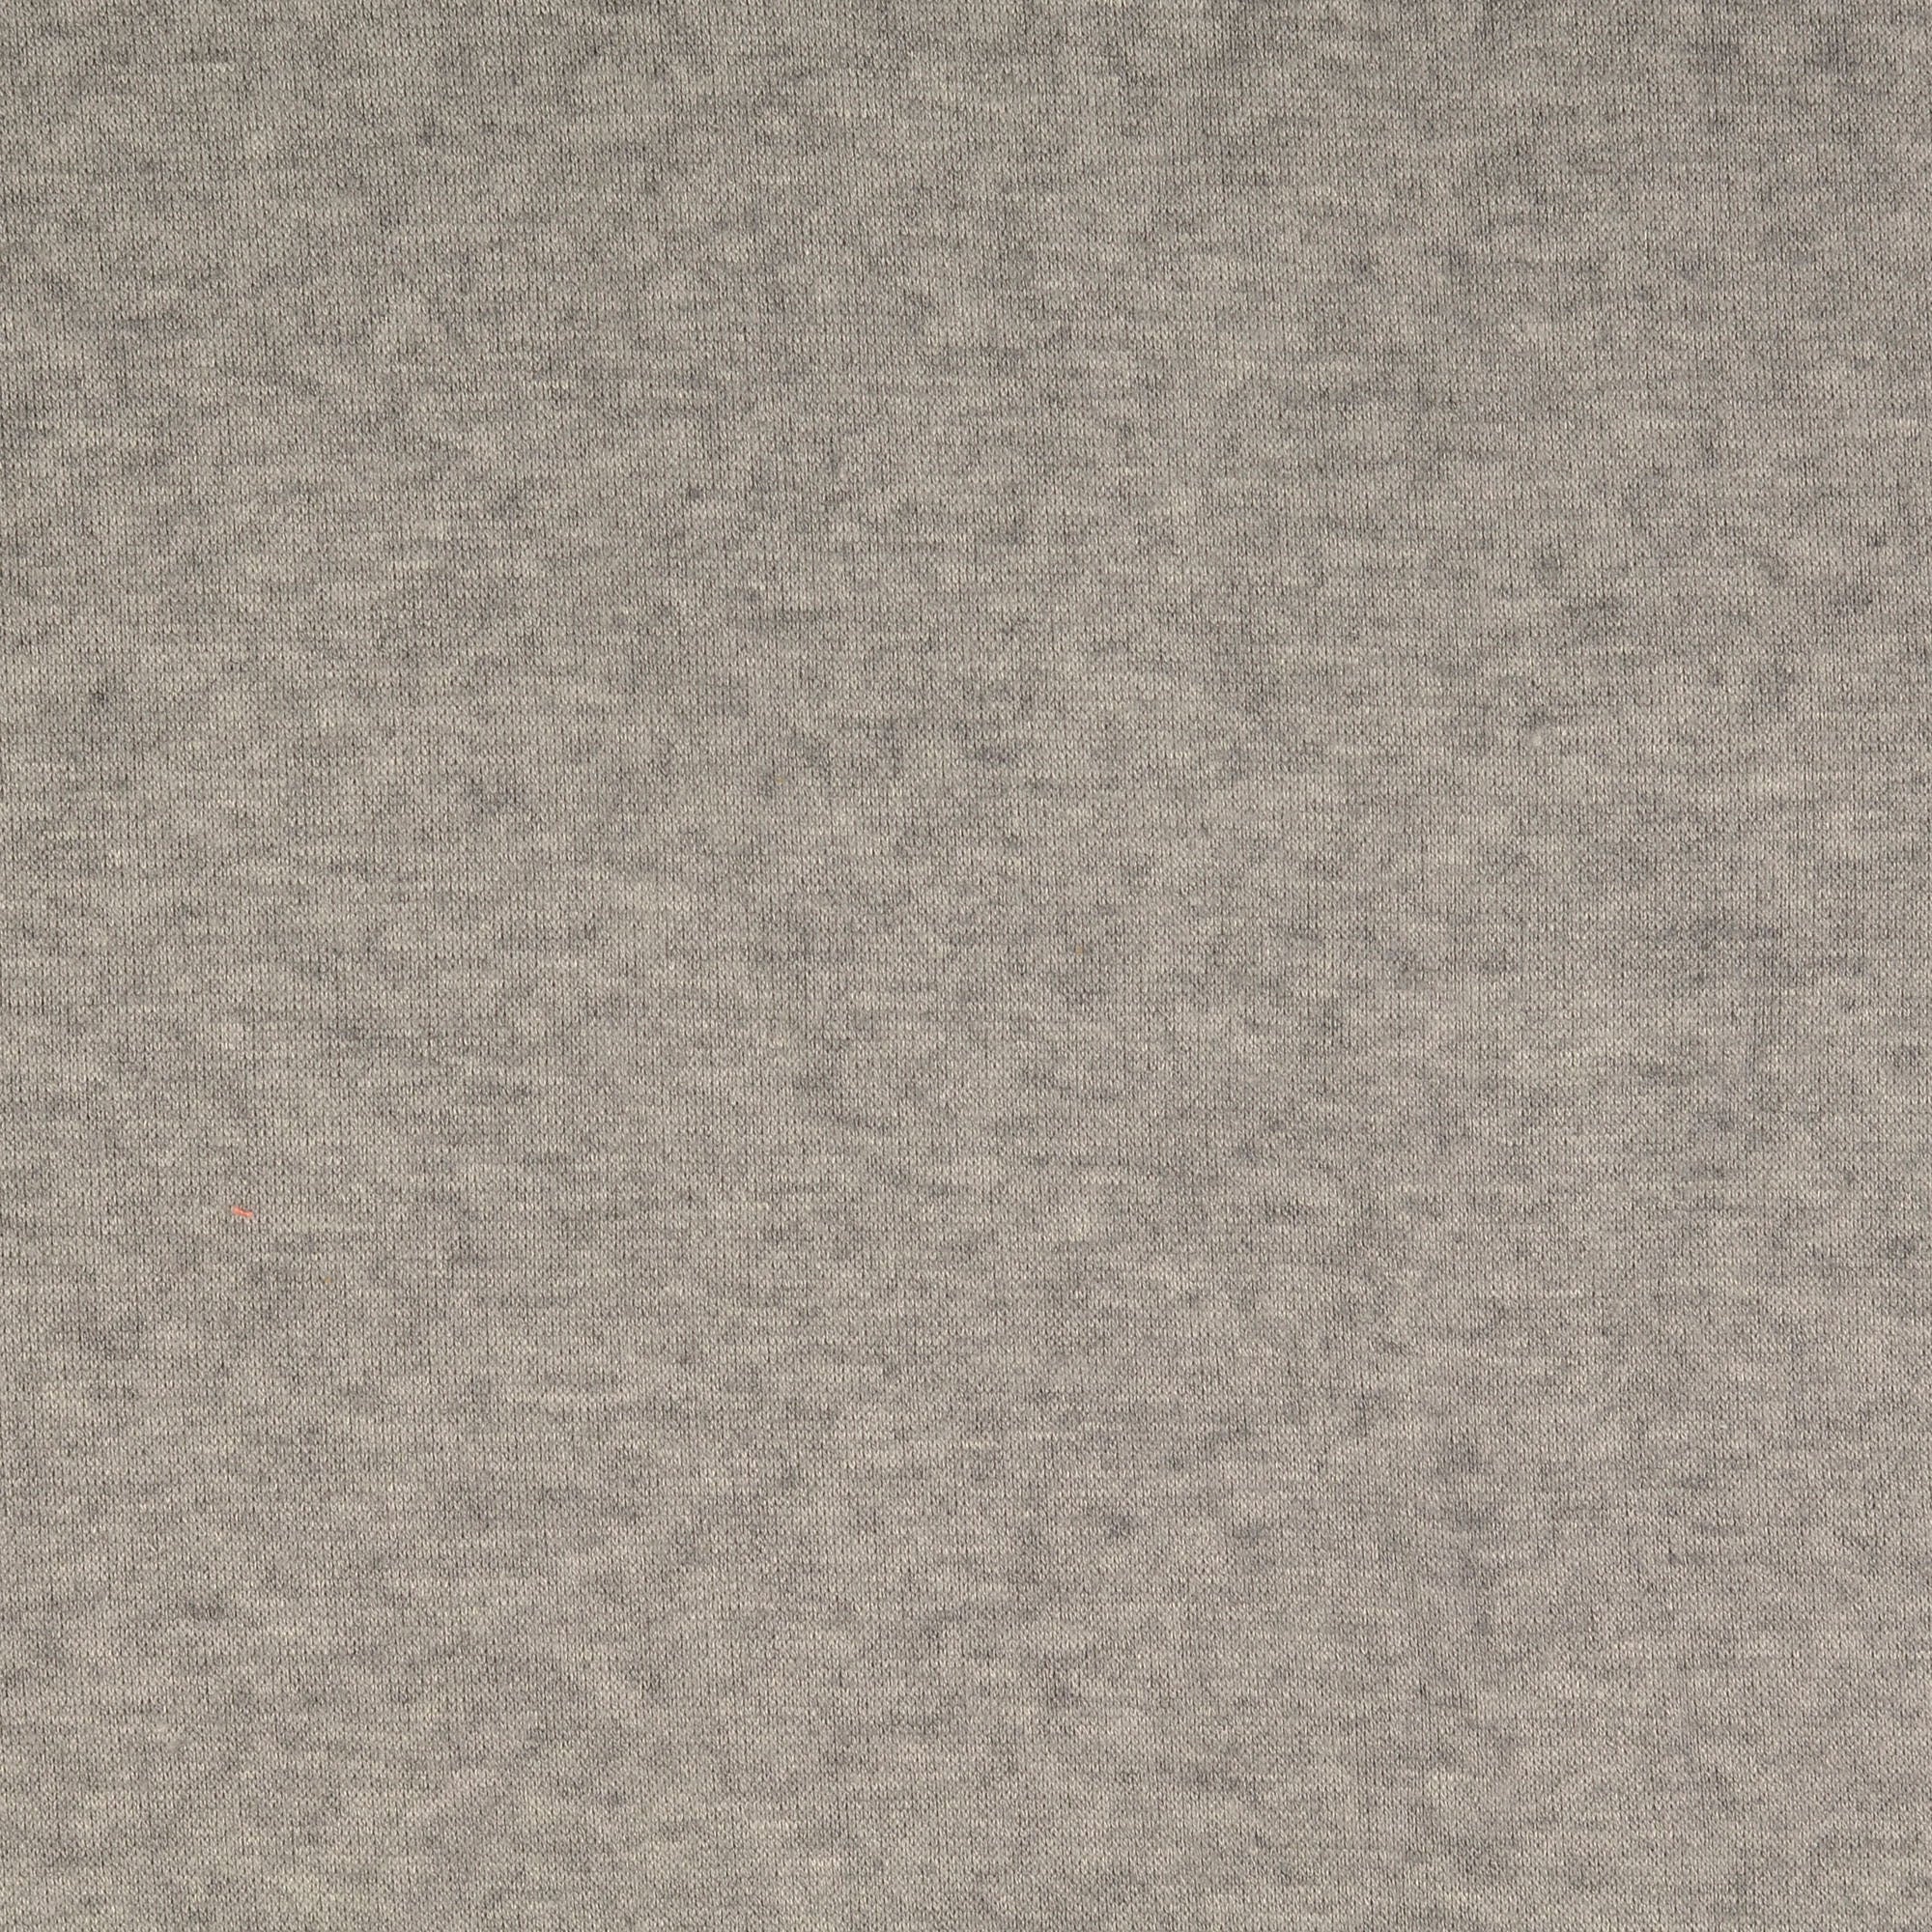 REMNANT 0.66 Metre - Snug Viscose Blend Sweater Knit in Grey Melange